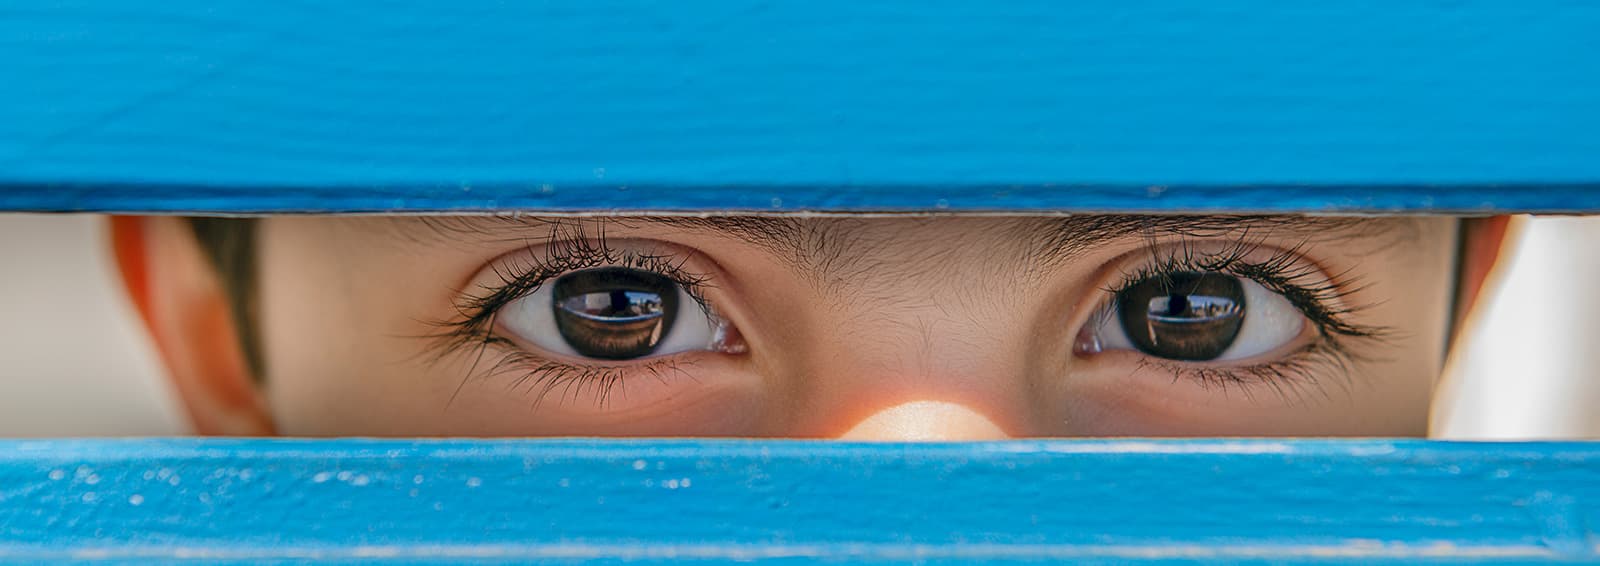 boy looking through blue fence